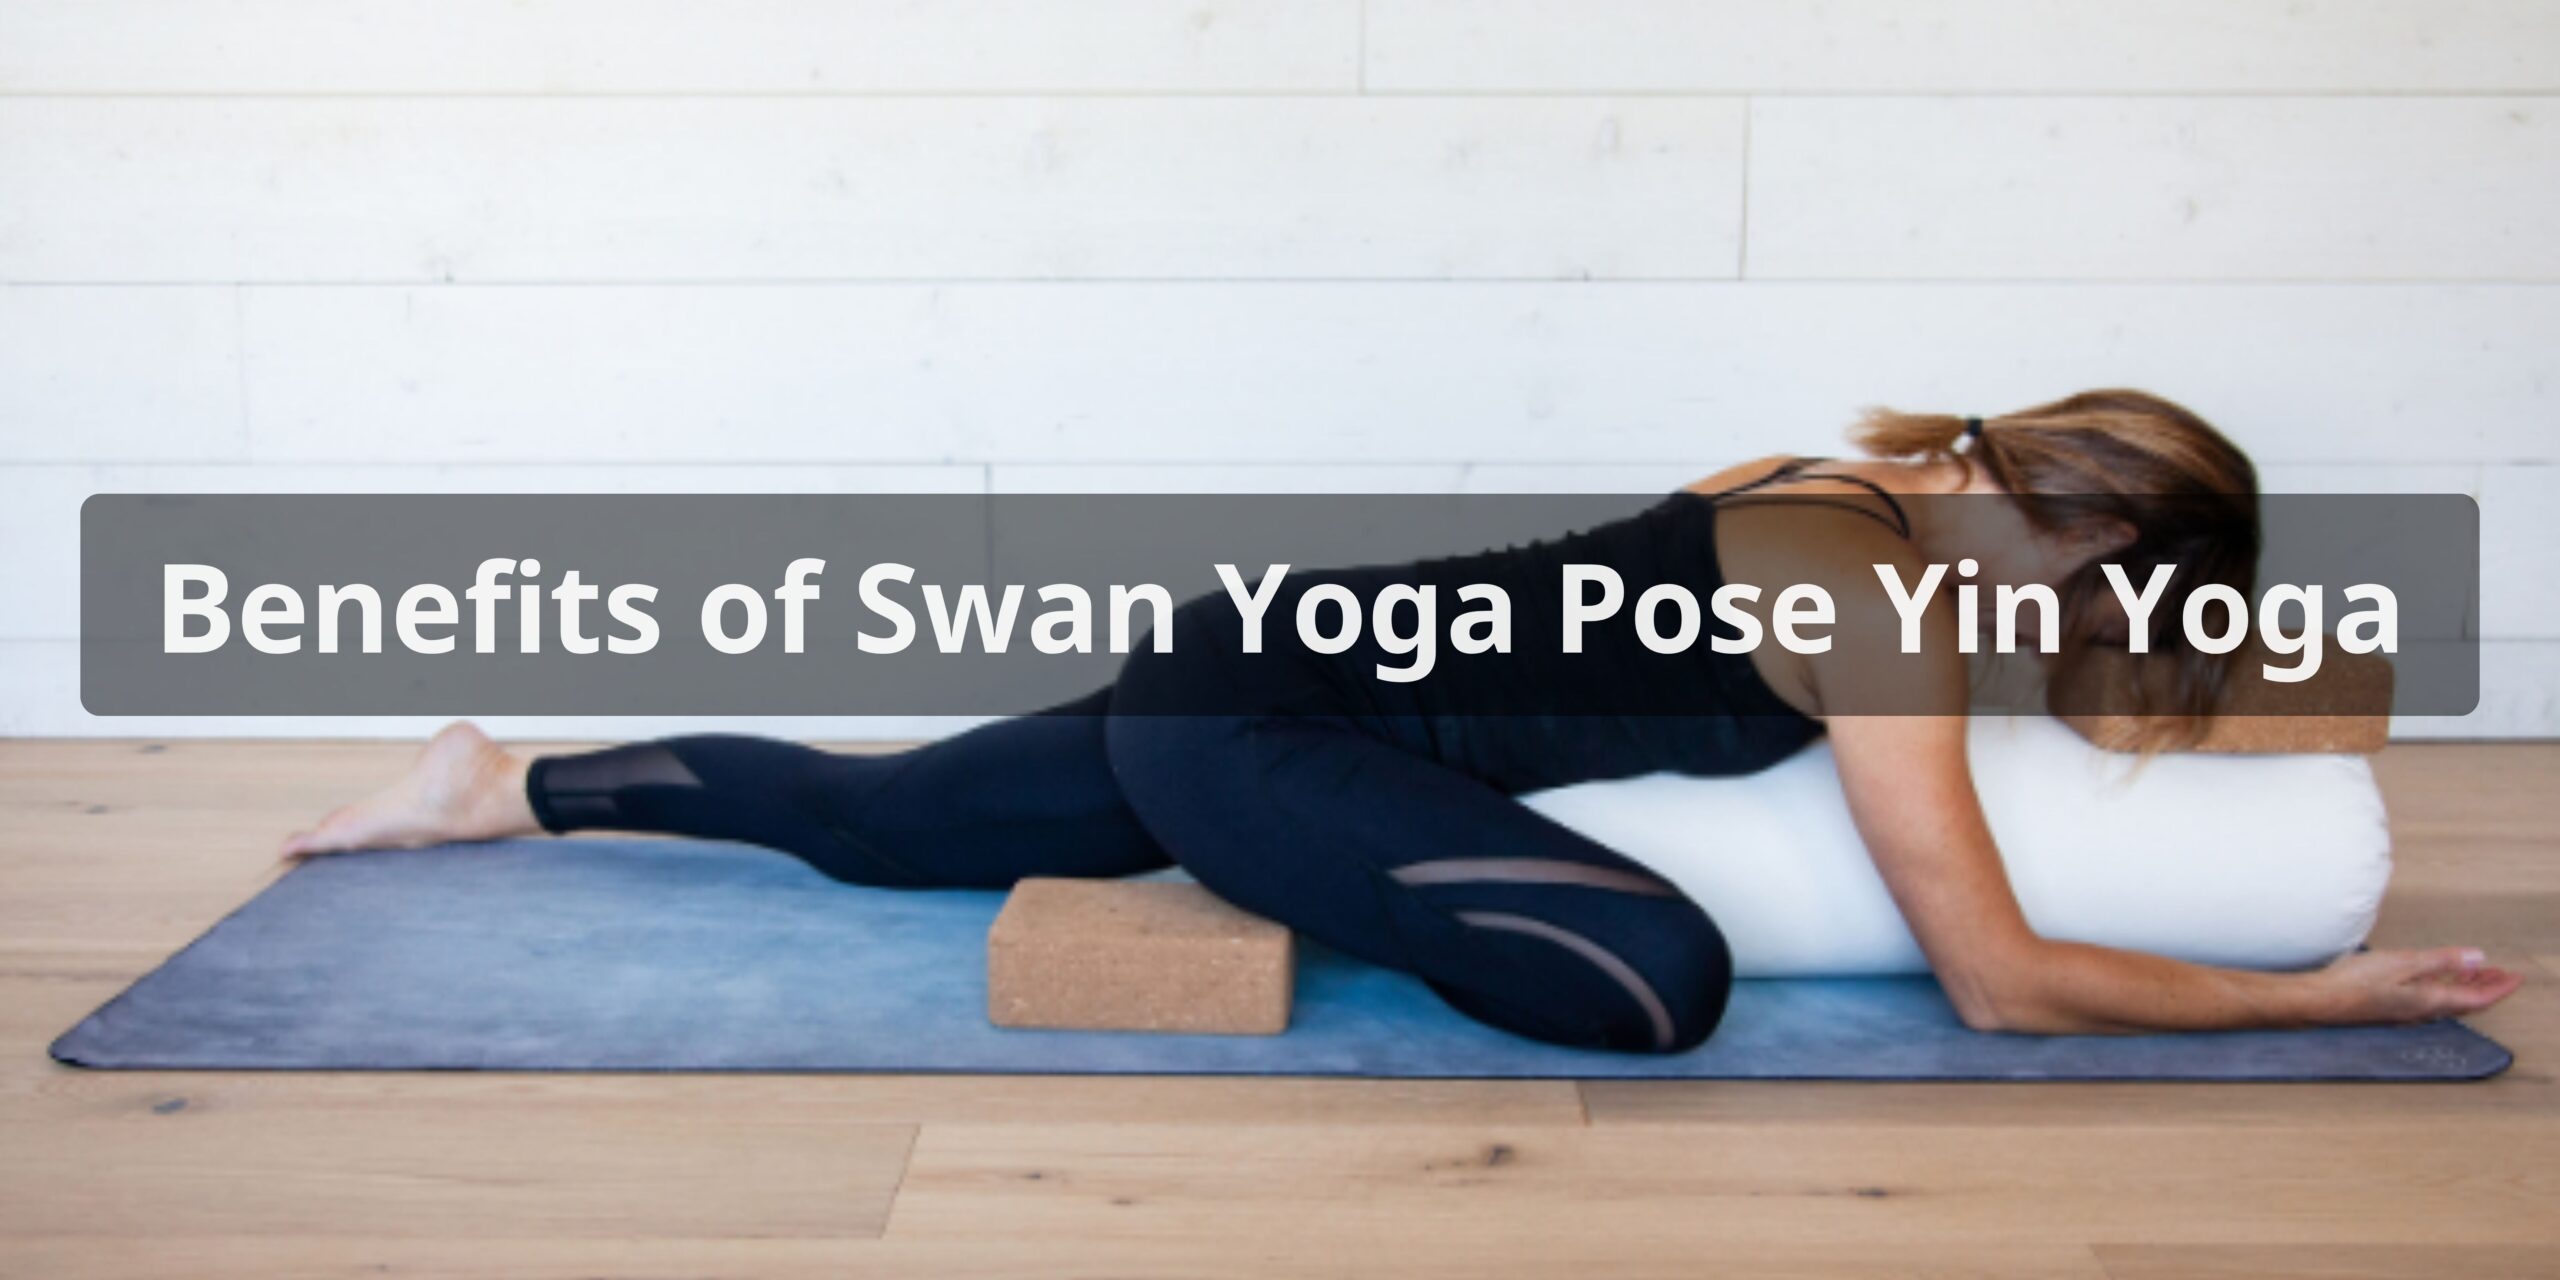 Benefits of Swan Yoga Pose Yin Yoga